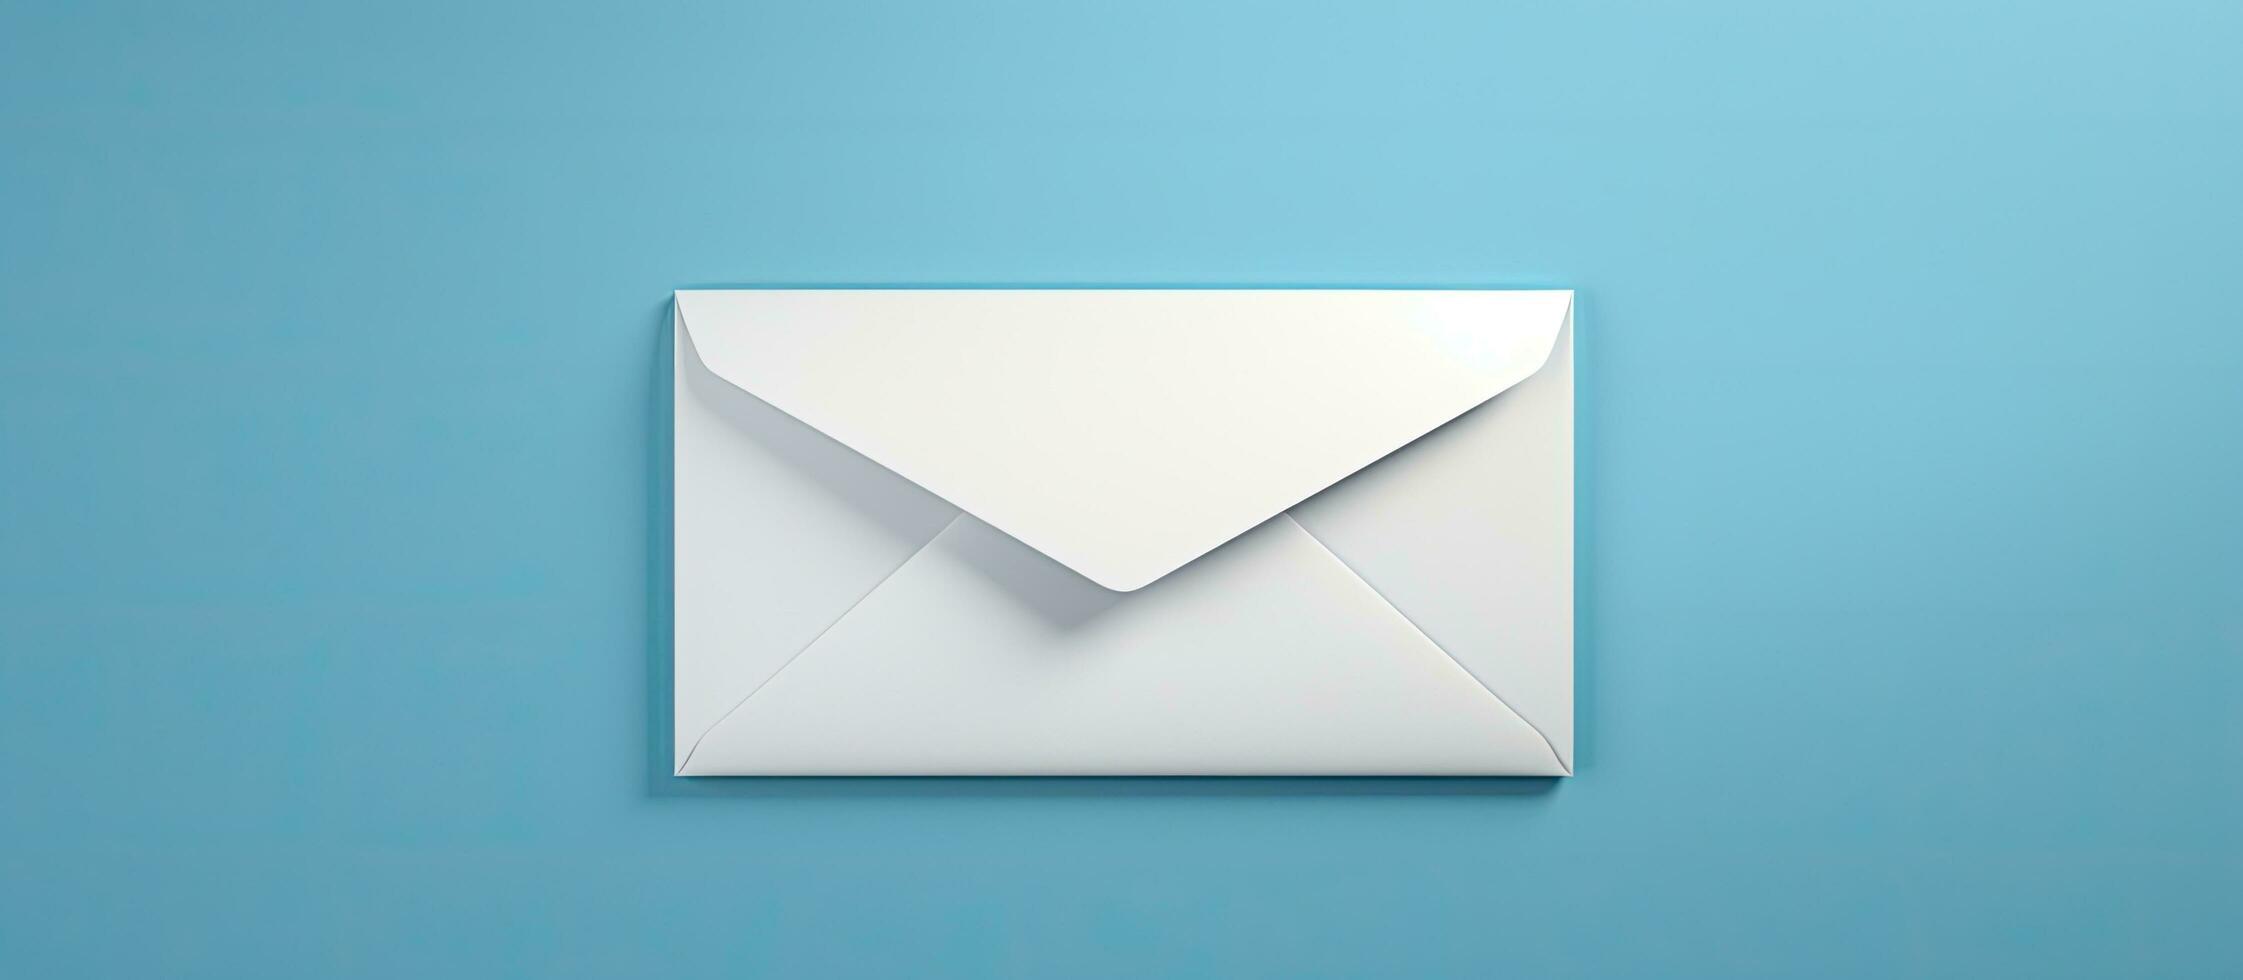 ein Email Marketing Konzept ist repräsentiert durch ein Weiß Briefumschlag und ein Email Adresse Symbol auf ein foto